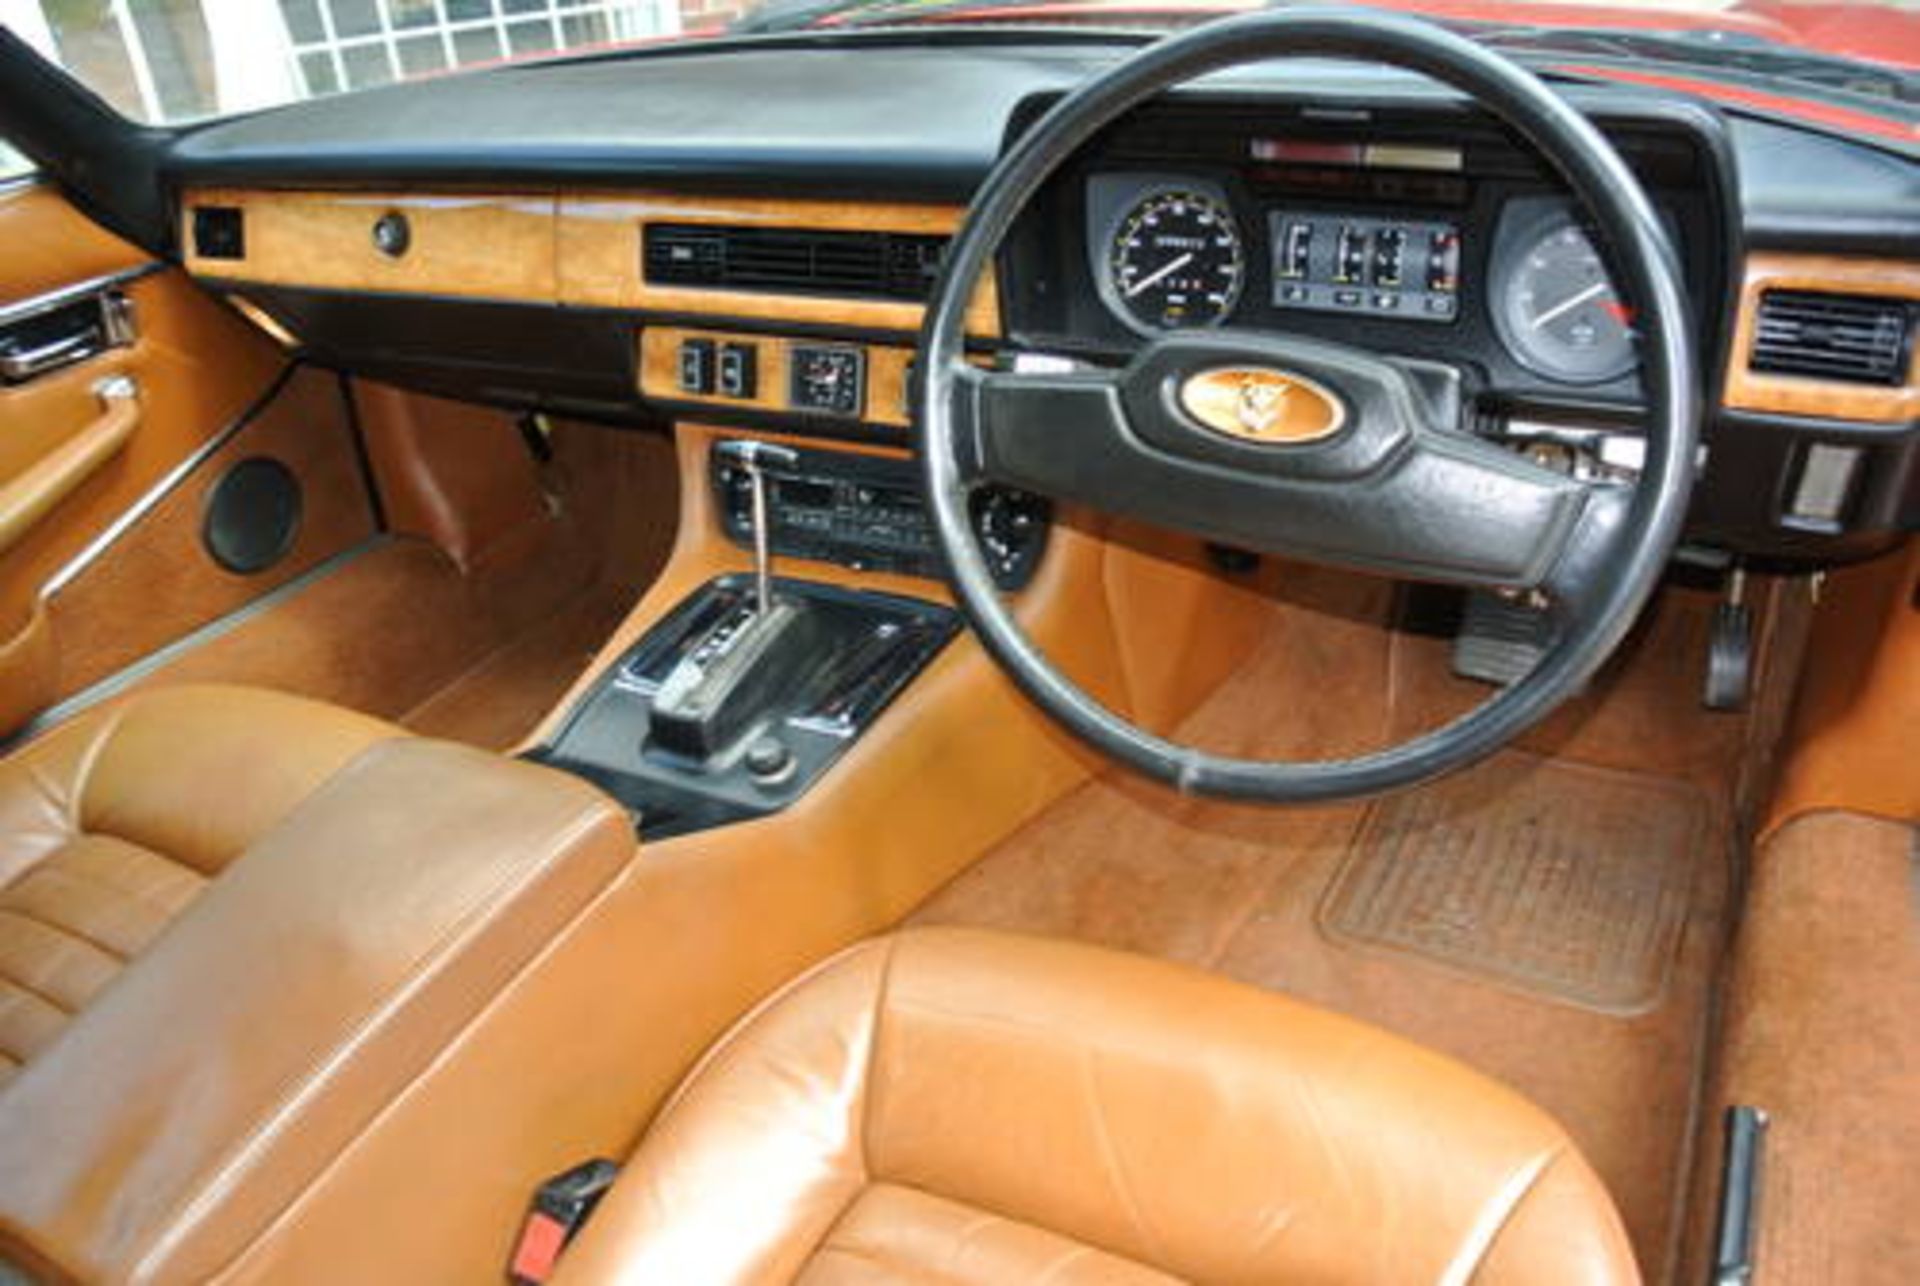 Jaguar XJS 5.3 V12 HE Coupe Auto 1982 - Image 3 of 3